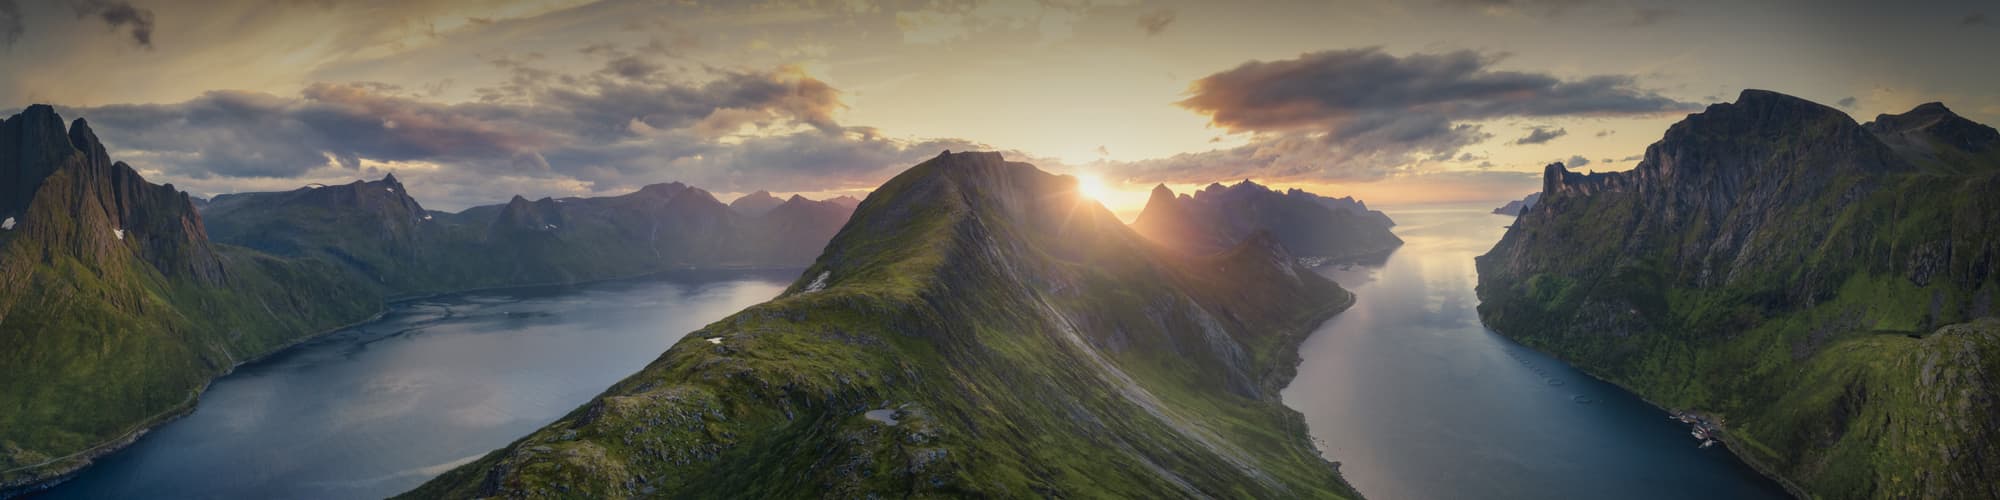 Randonnée en Norvège : voyage et trek © sivivolk